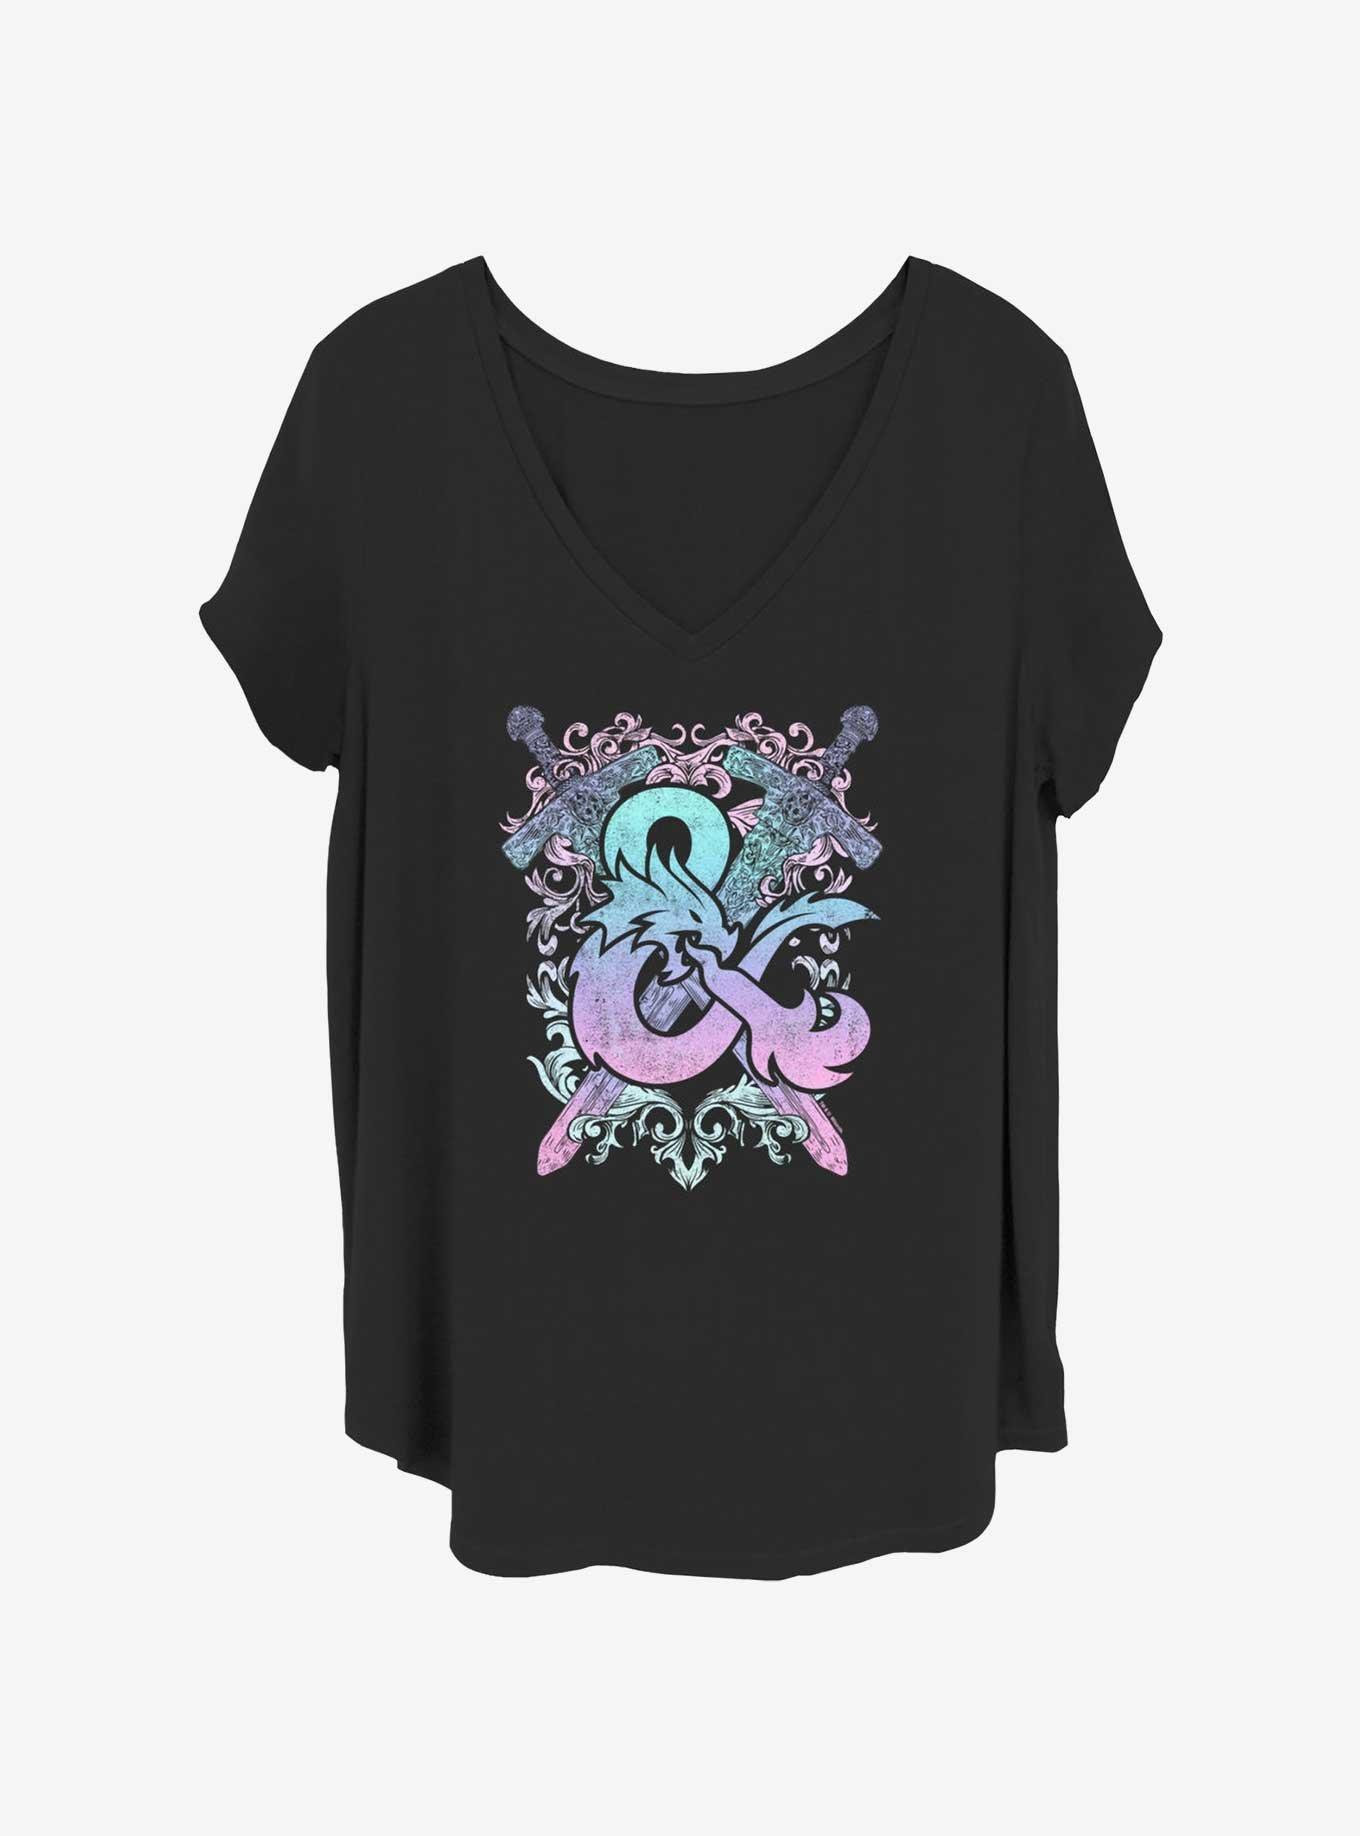 Dungeons & Dragons Pastel Crossed Swords Logo Girls T-Shirt Plus Size, BLACK, hi-res